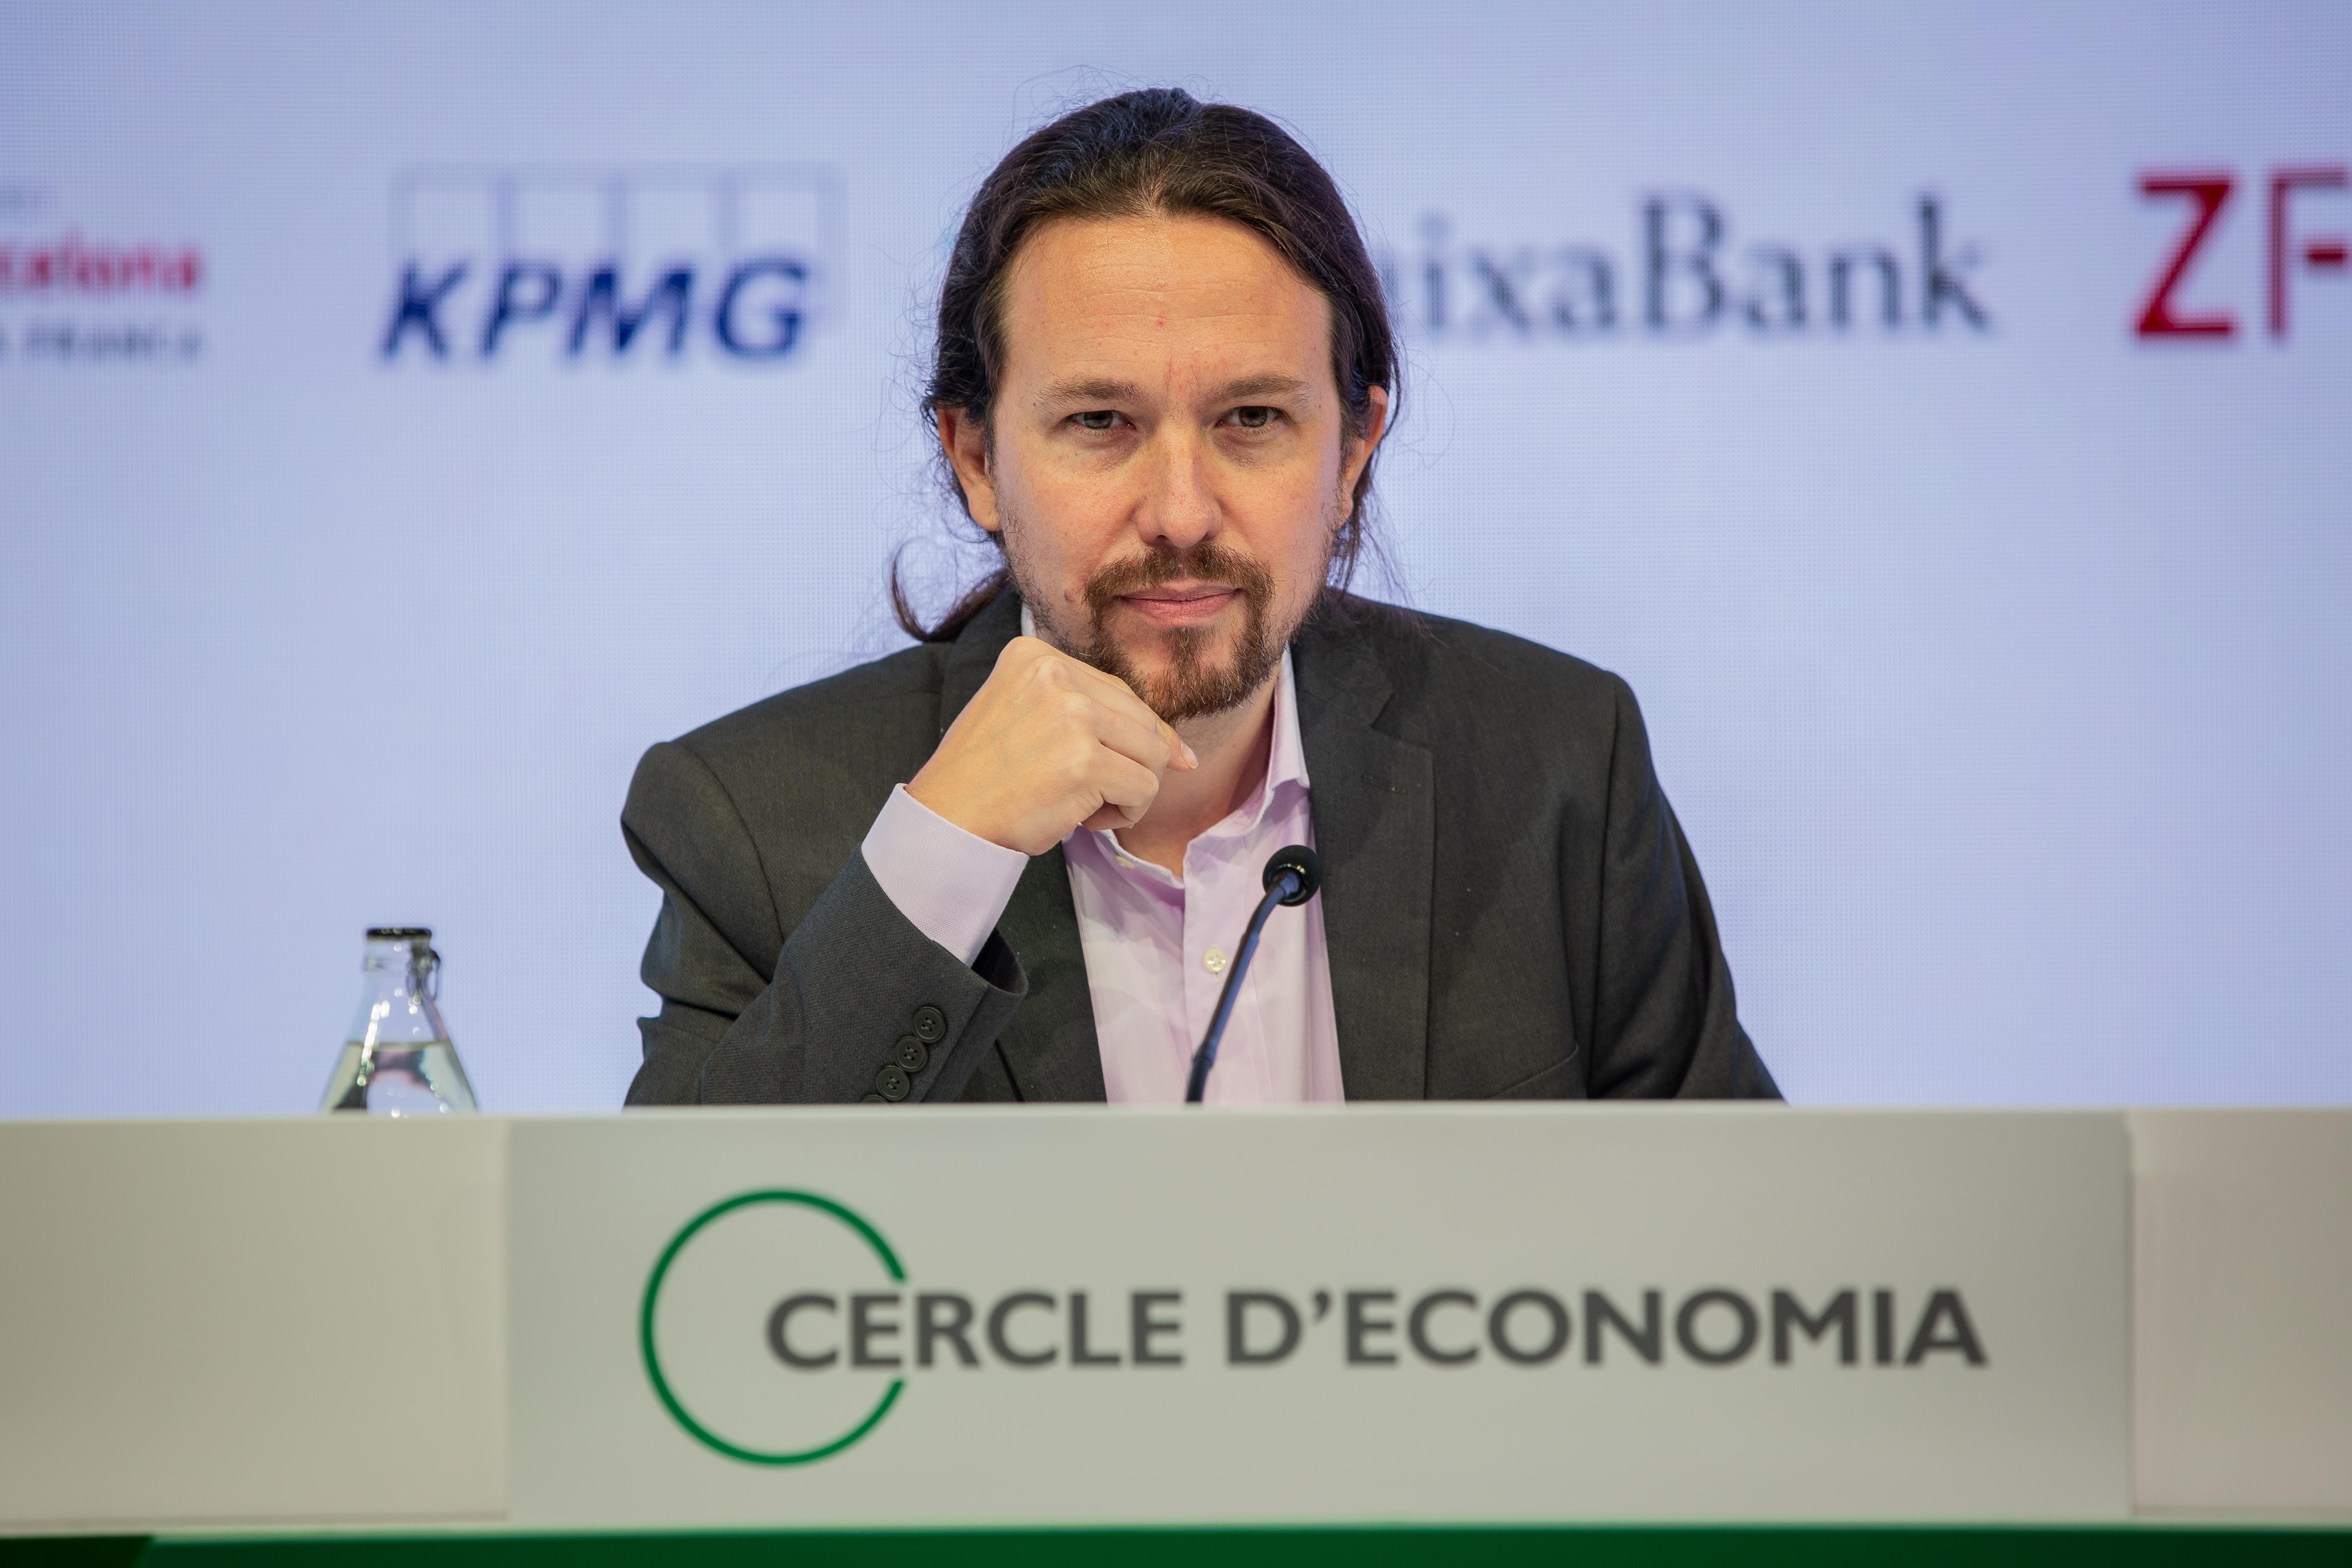 El secretario general de Podemos Pablo Iglesias comparece en la XXXV reunión del Círculo de Economía en Barcelona - David Zorrakino Europa Press